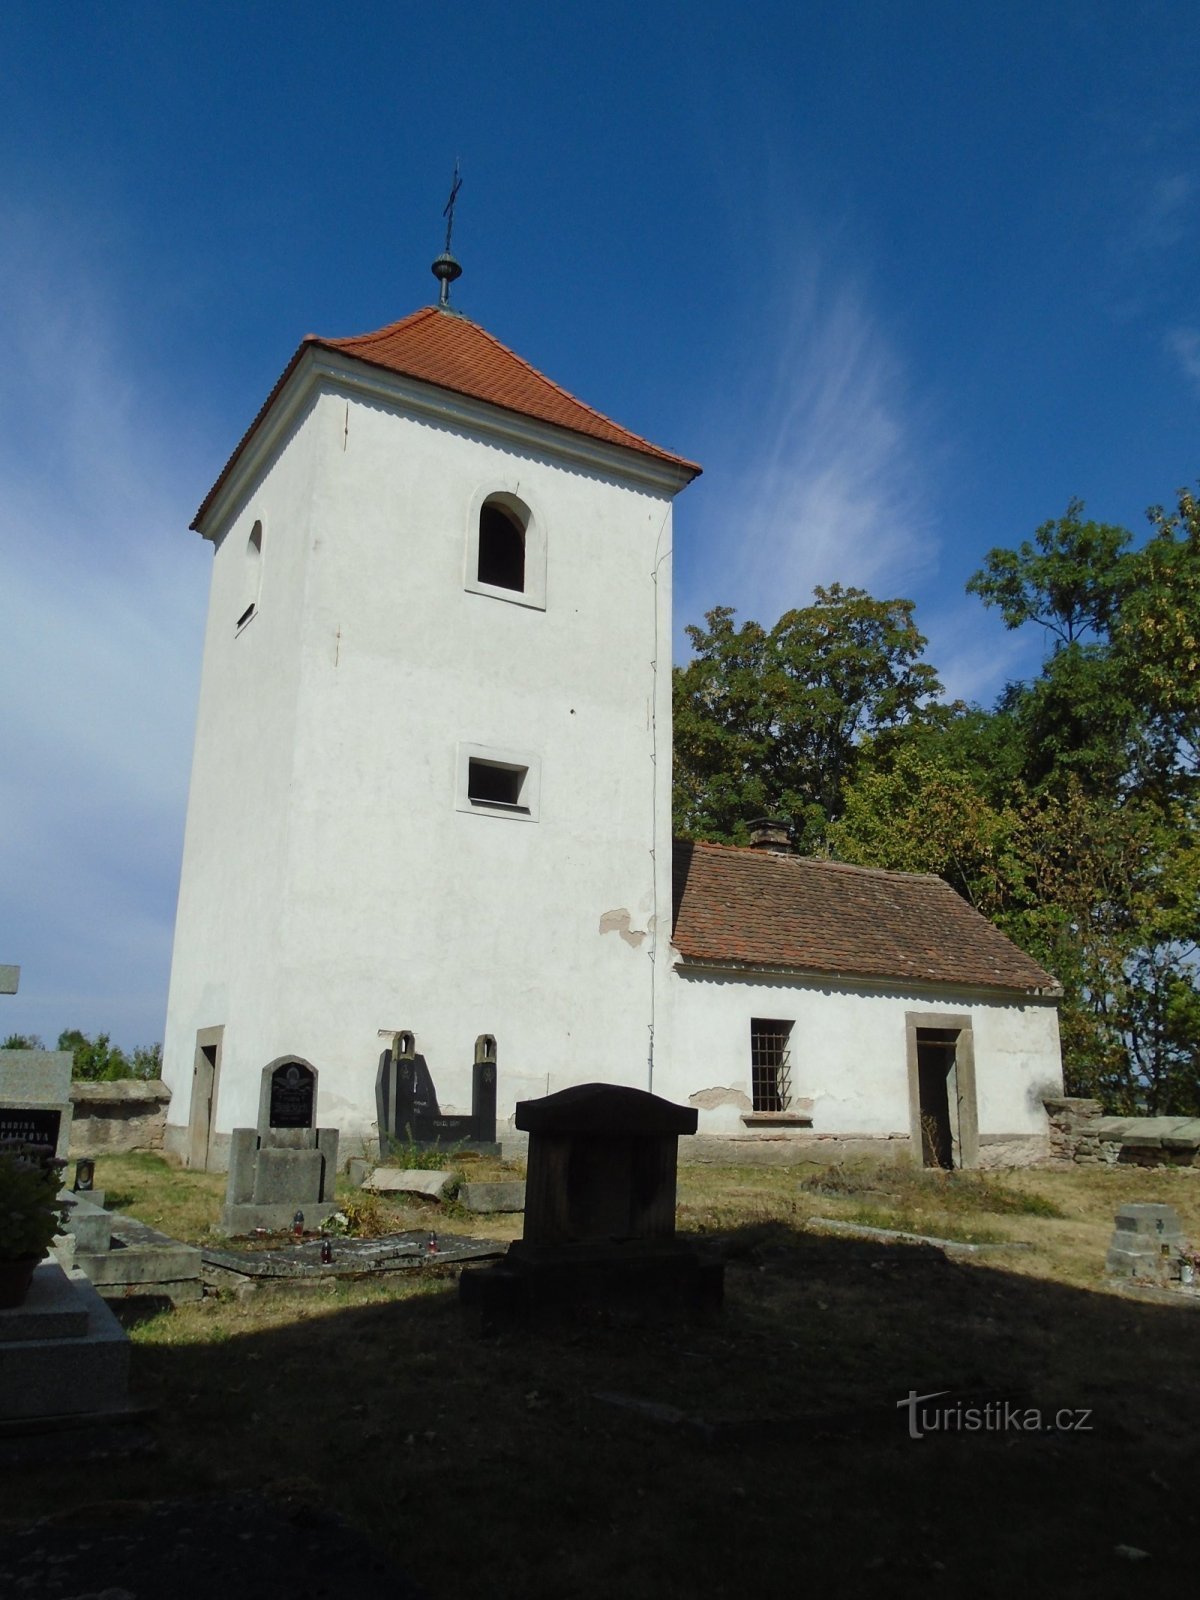 Tháp chuông với một căn hộ cho người bốc mộ gần nhà thờ St. Václav (Habřina, 9.9.2018/XNUMX/XNUMX)